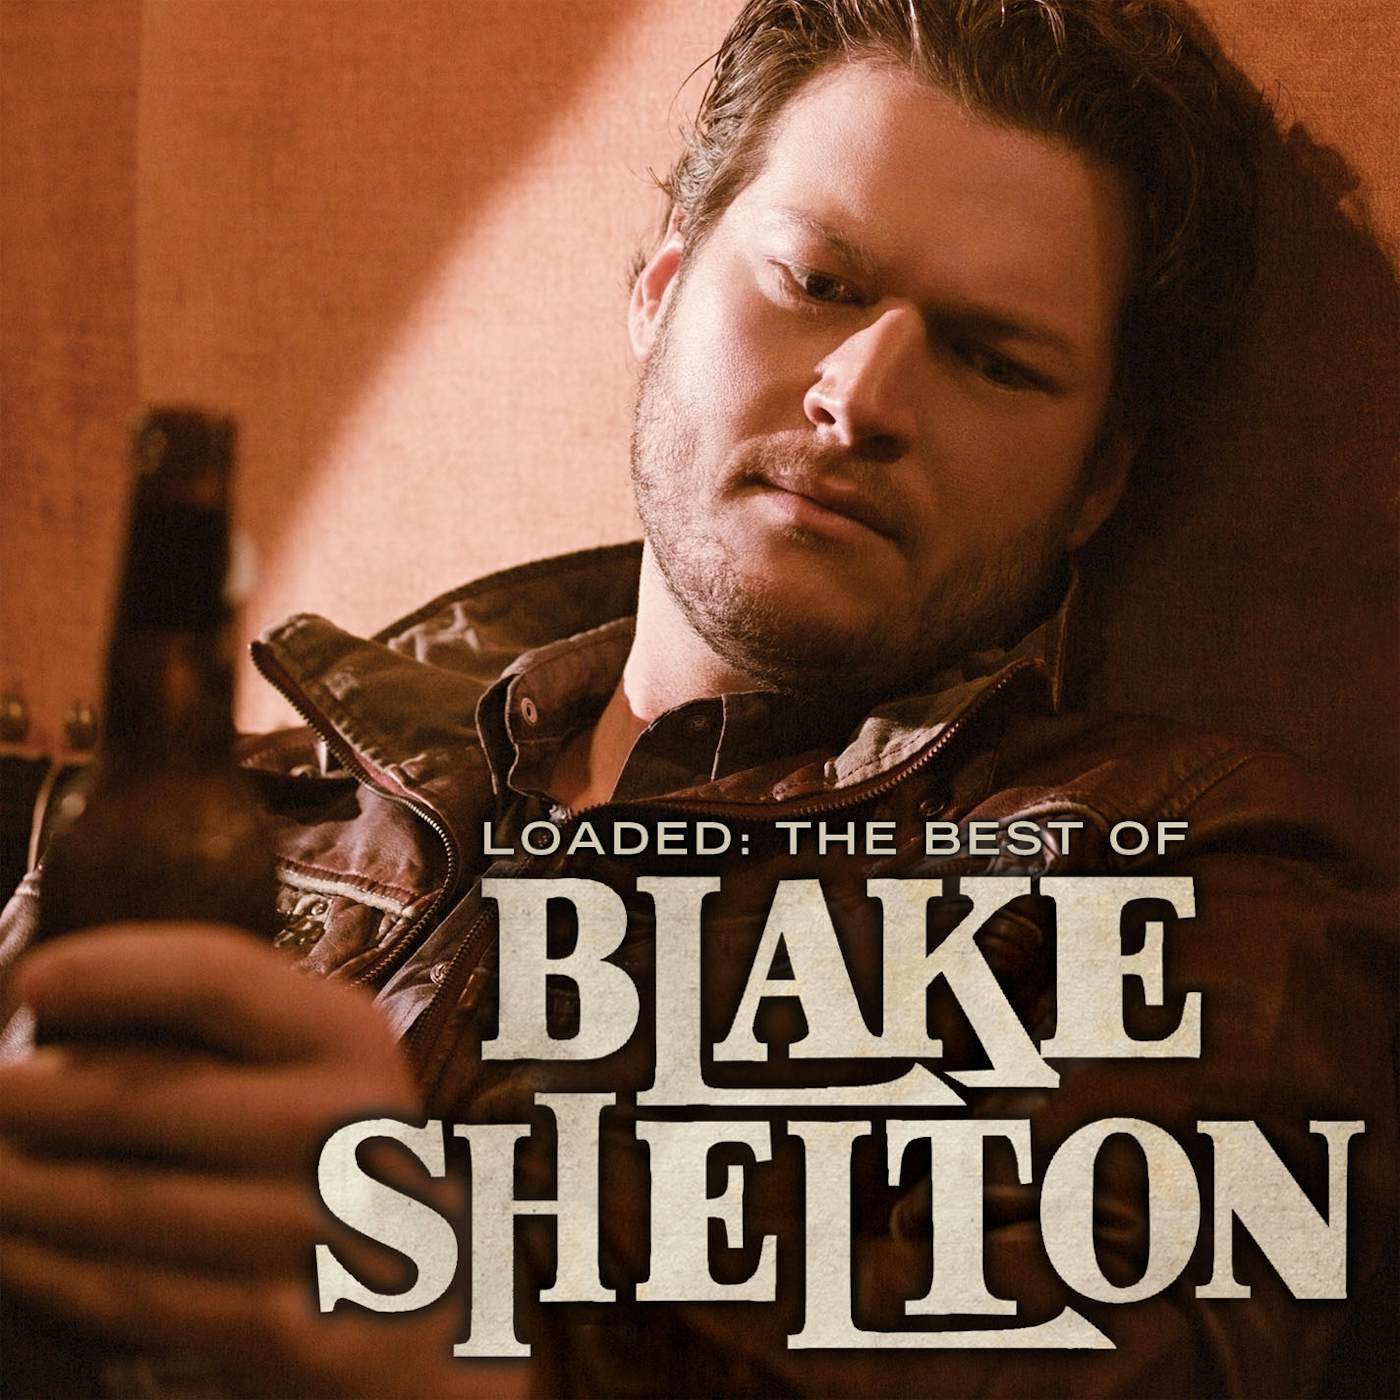 Loaded: The Best Of Blake Shelton Vinyl Record